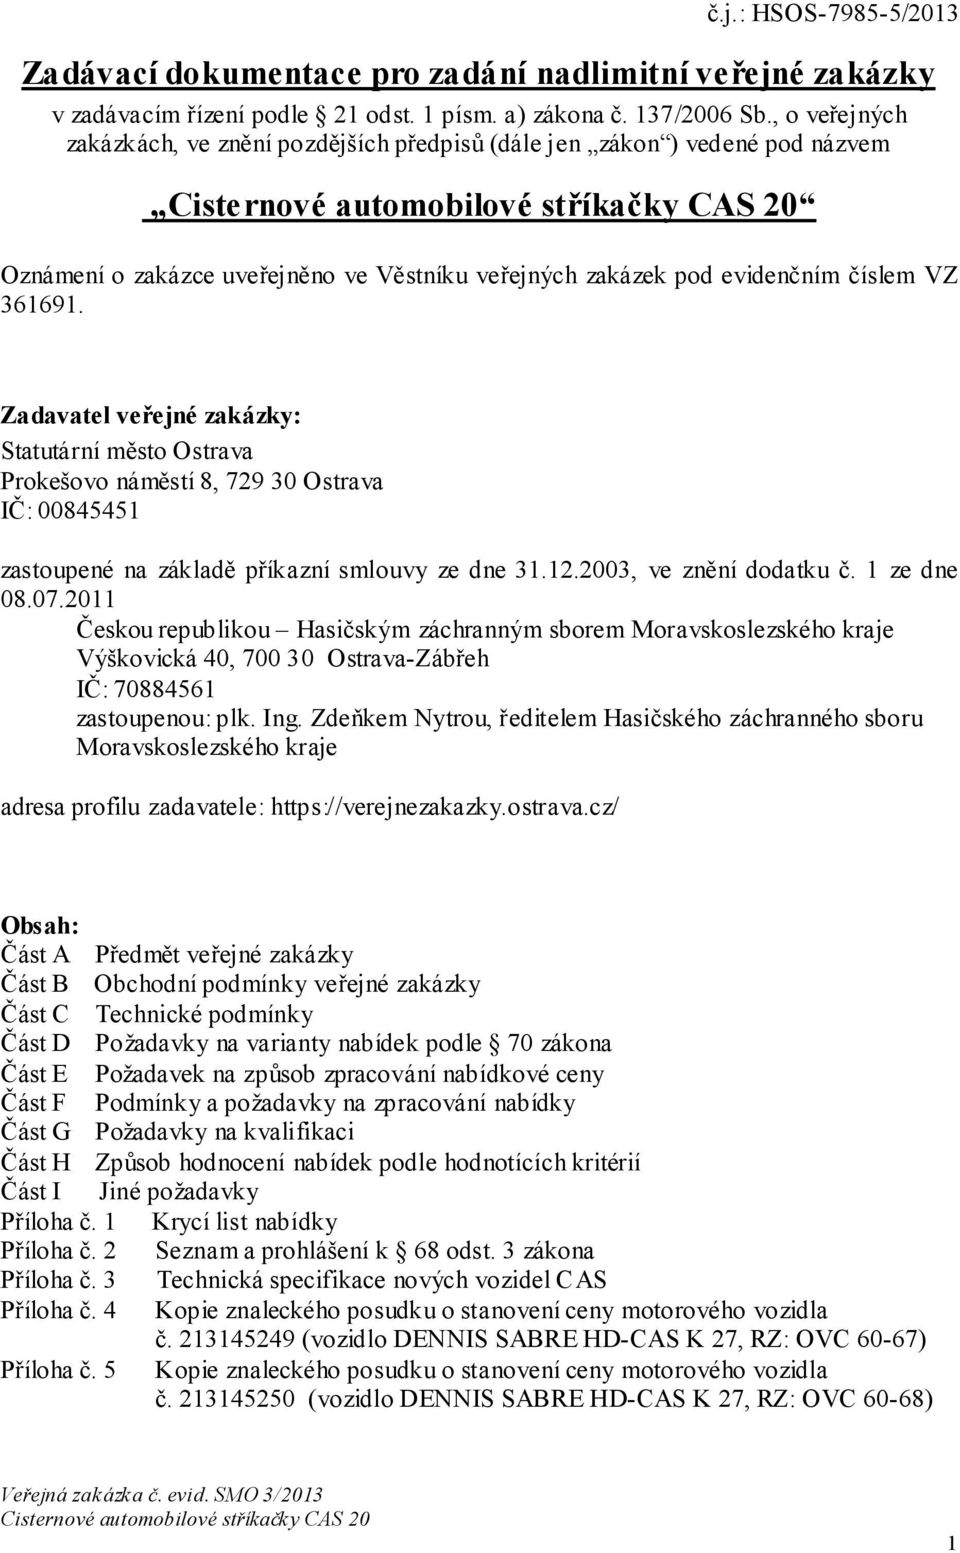 Zadavatel veřejné zakázky: Statutární město Ostrava Prokešovo náměstí 8, 729 30 Ostrava IČ: 00845451 zastoupené na základě příkazní smlouvy ze dne 31.12.2003, ve znění dodatku č. 1 ze dne 08.07.